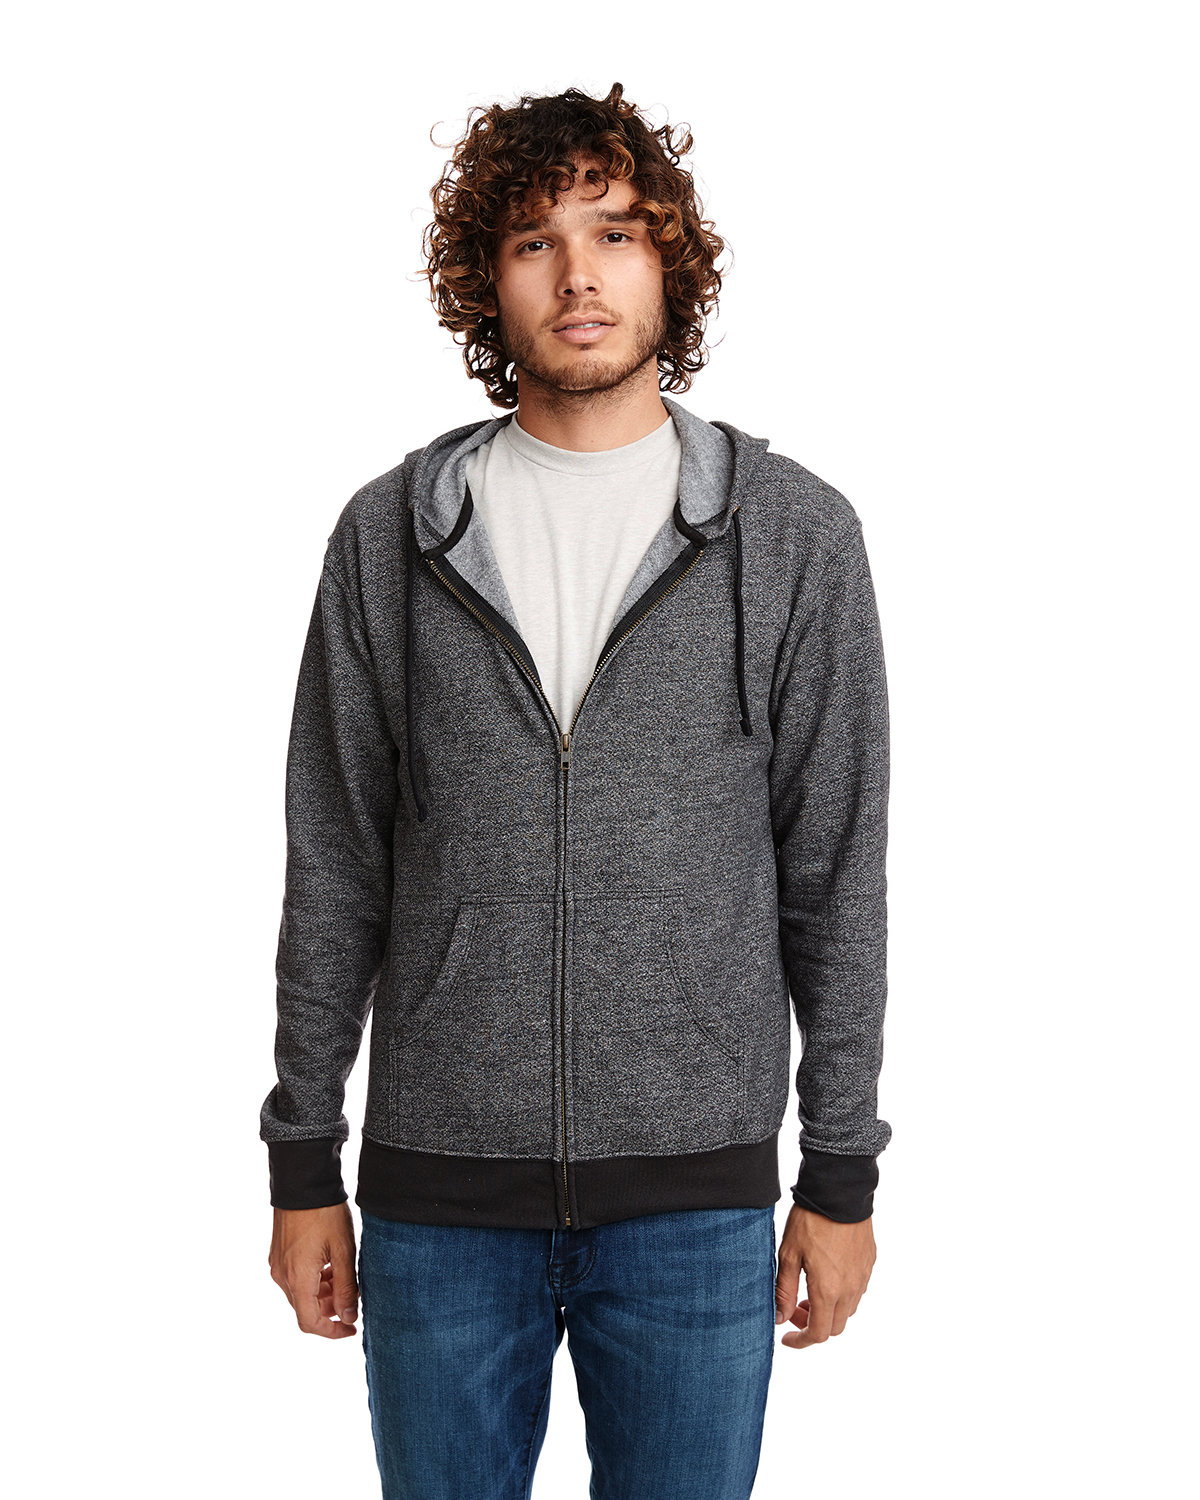 Next Level Adult Pacifica Denim Fleece Full-Zip Hooded Sweatshirt BLACK 